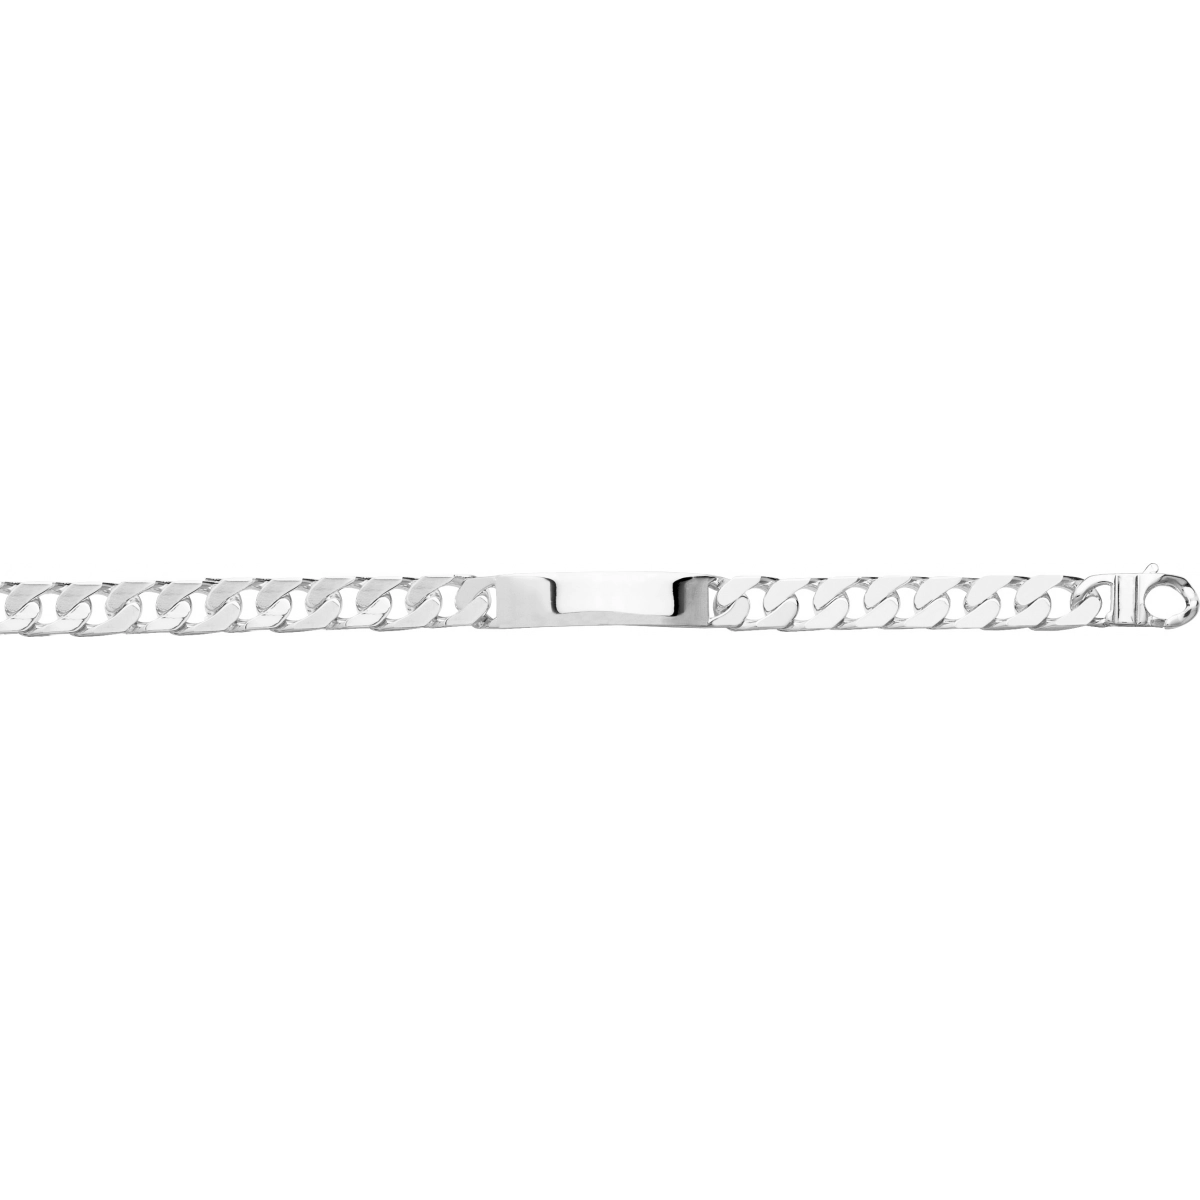 ID bracelet 10mm rh925 Silver - Size: 22  Lua Blanca  304008.00.22